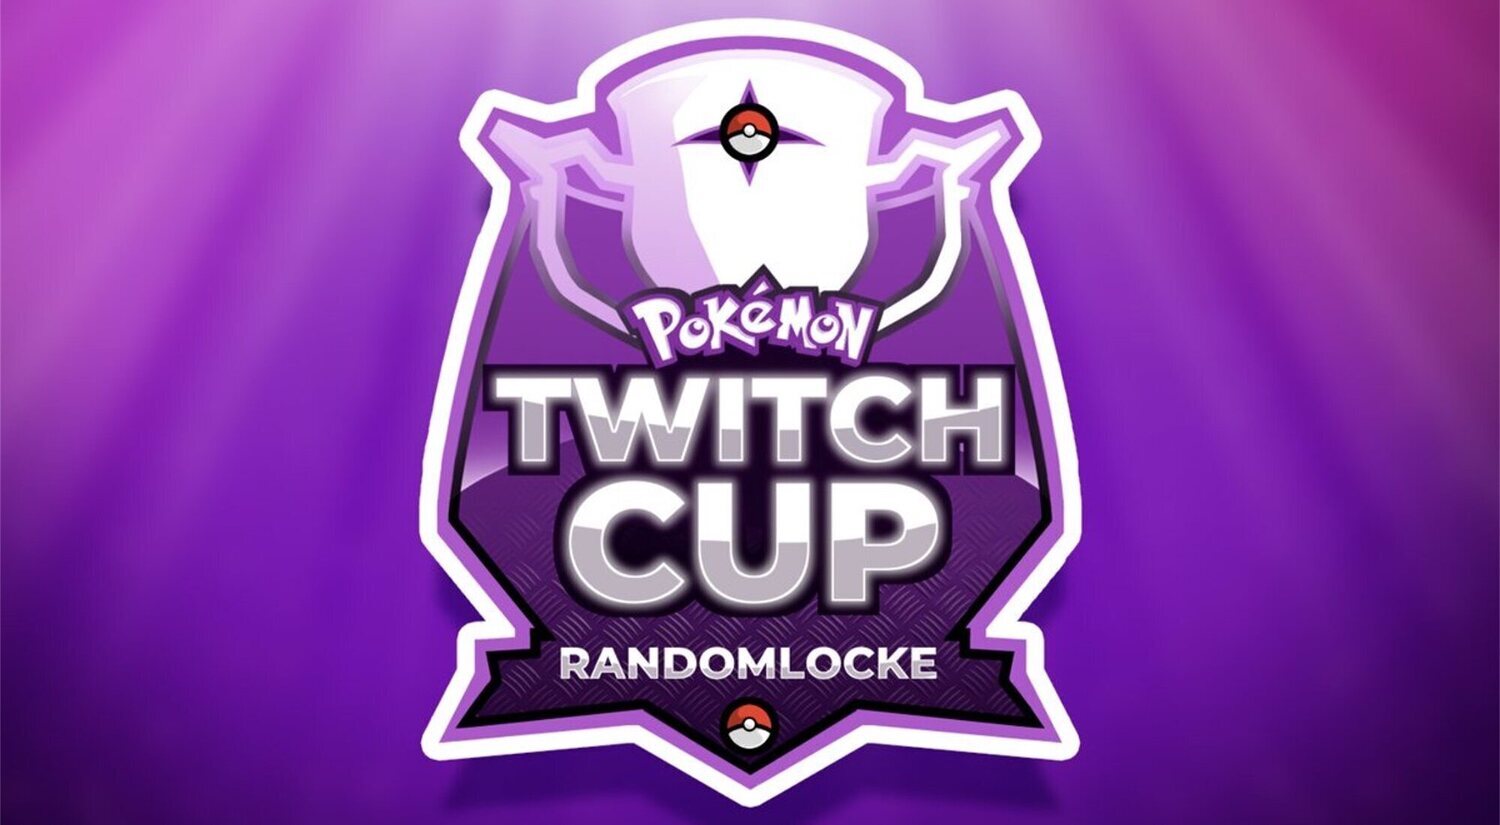 Pokémon Twitch Cup, el torneo para dar visibilidad a Pokémon en Twitch